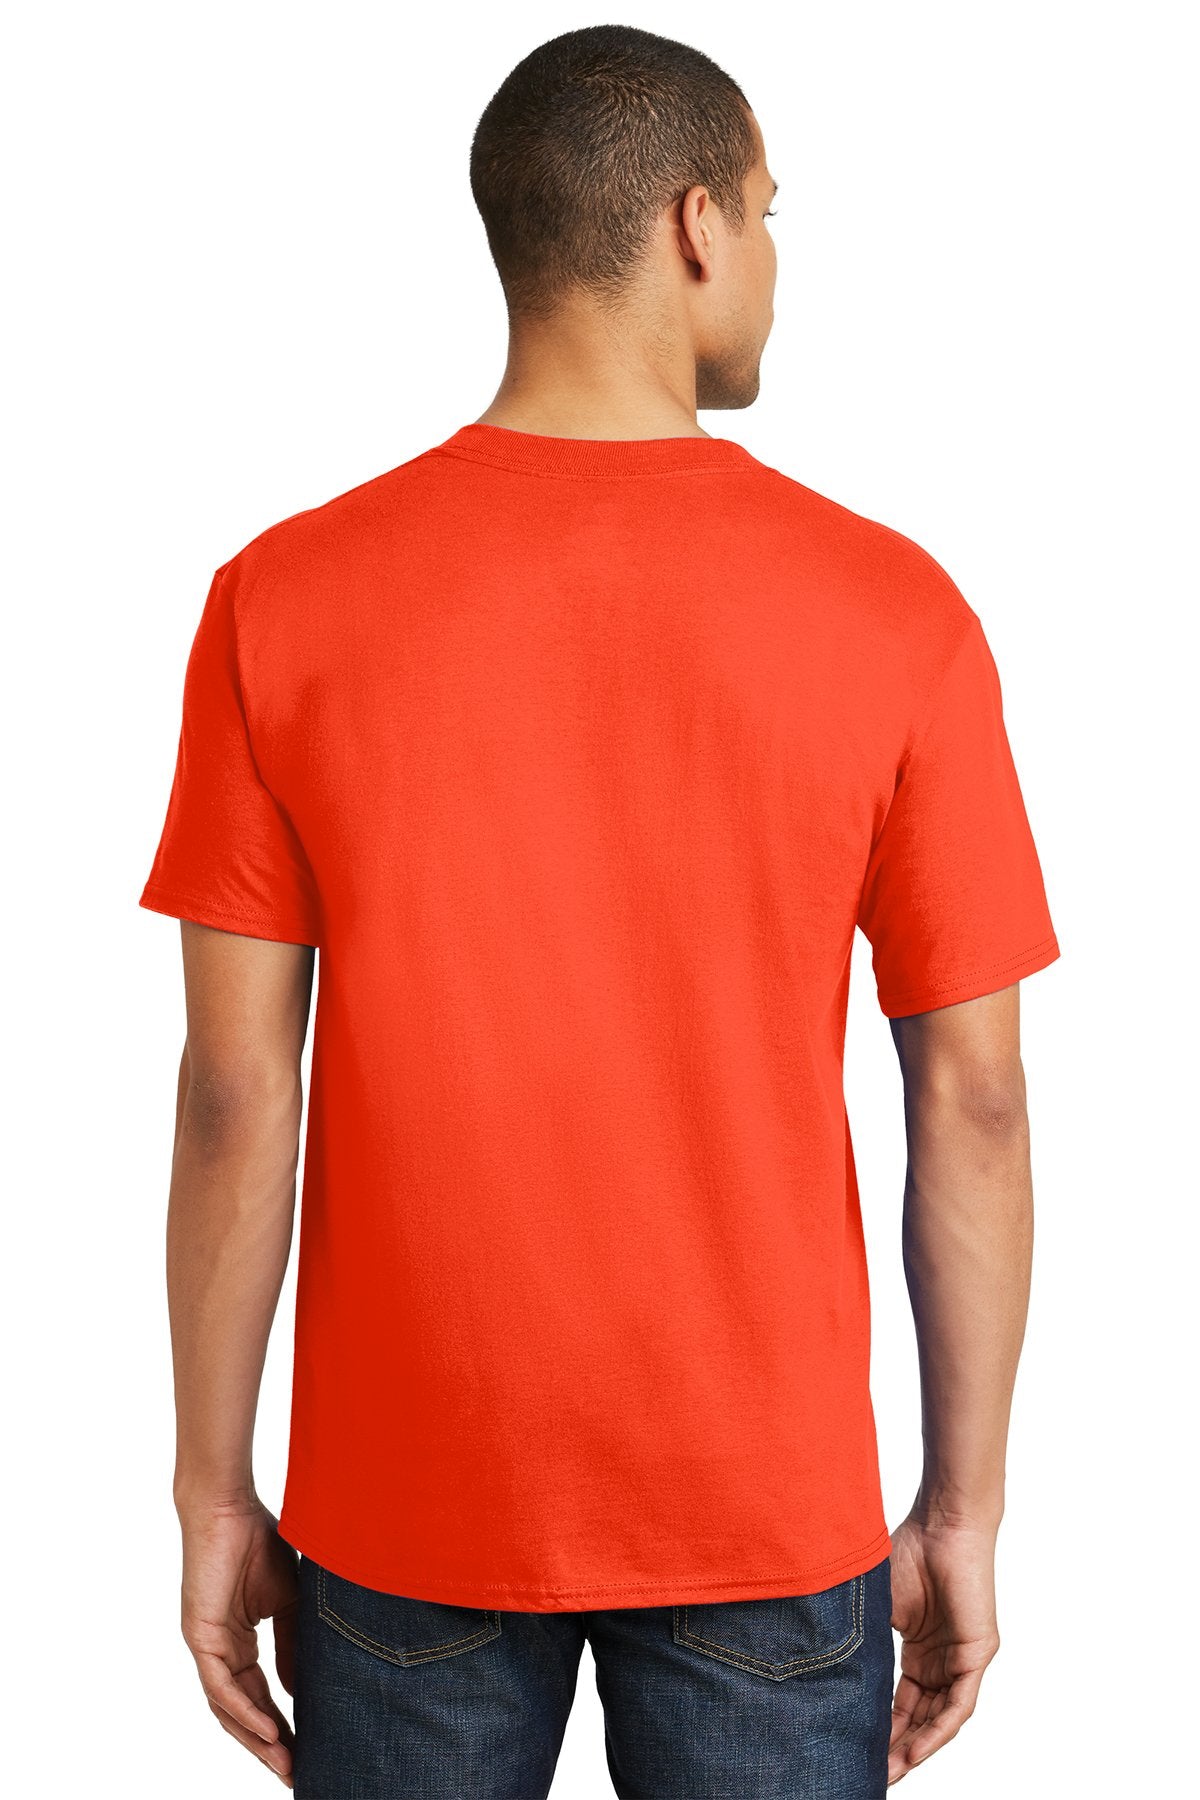 hanes beefy cotton t shirt 5180 orange